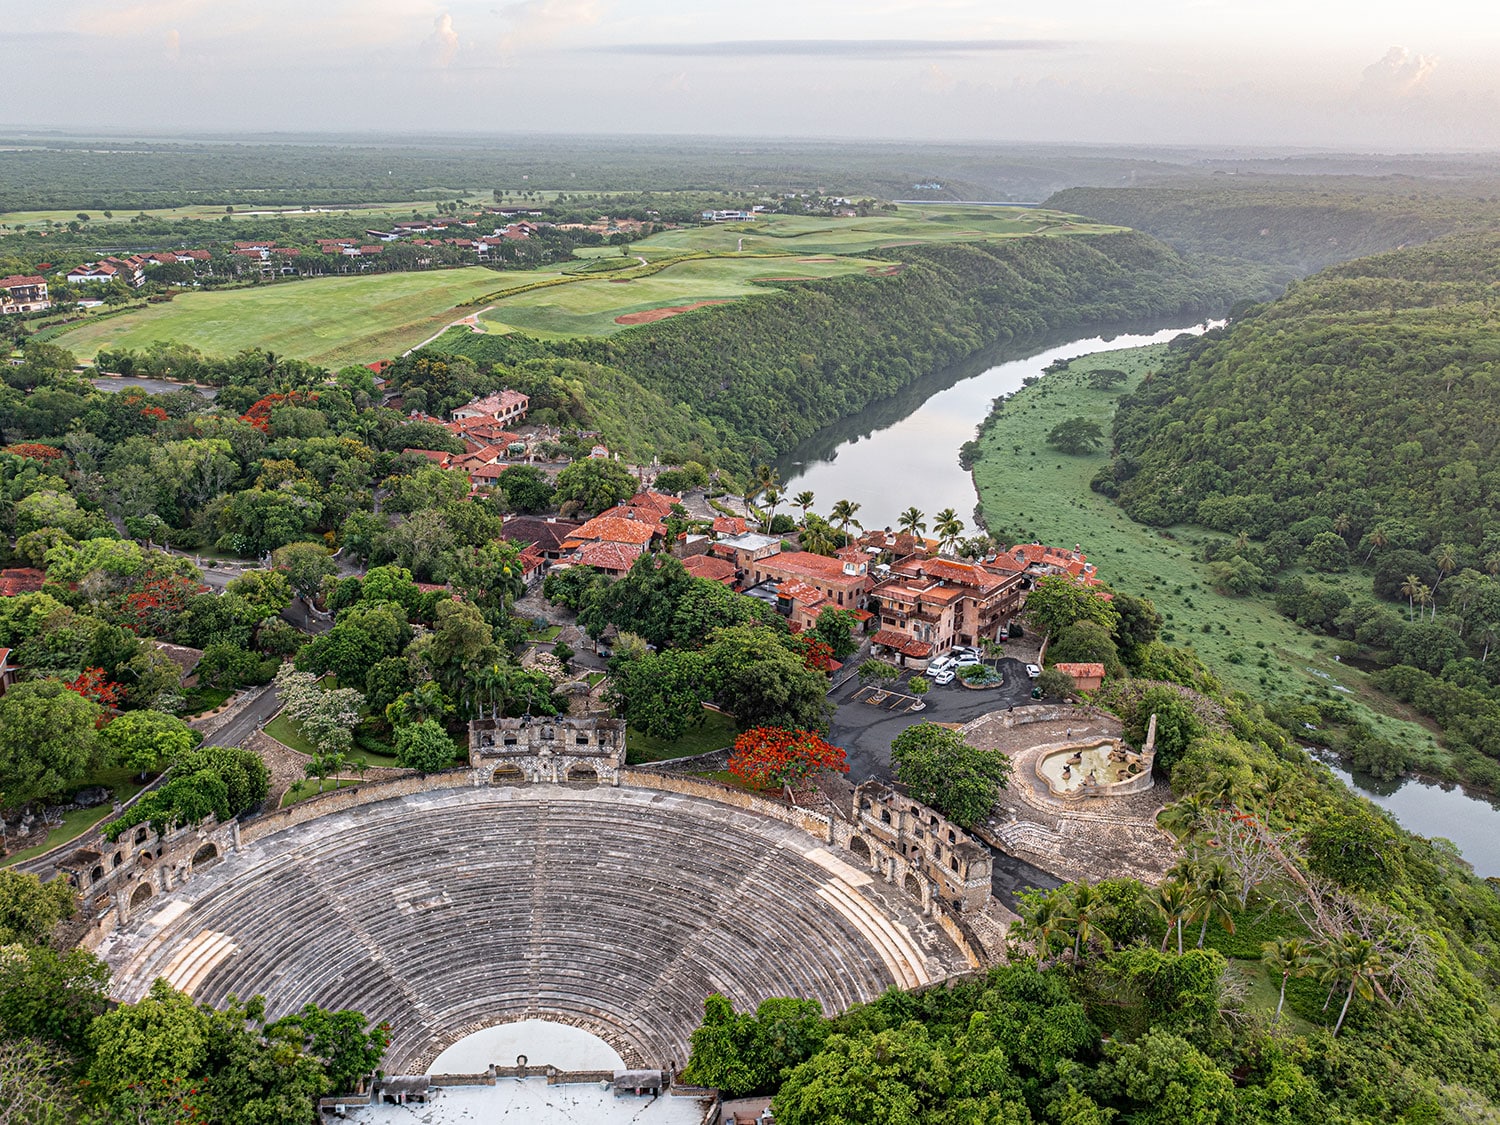 An aerial view of the Altos de Chavón amphitheater at Casa de Campo Resort and Villas in the Dominican Republic.